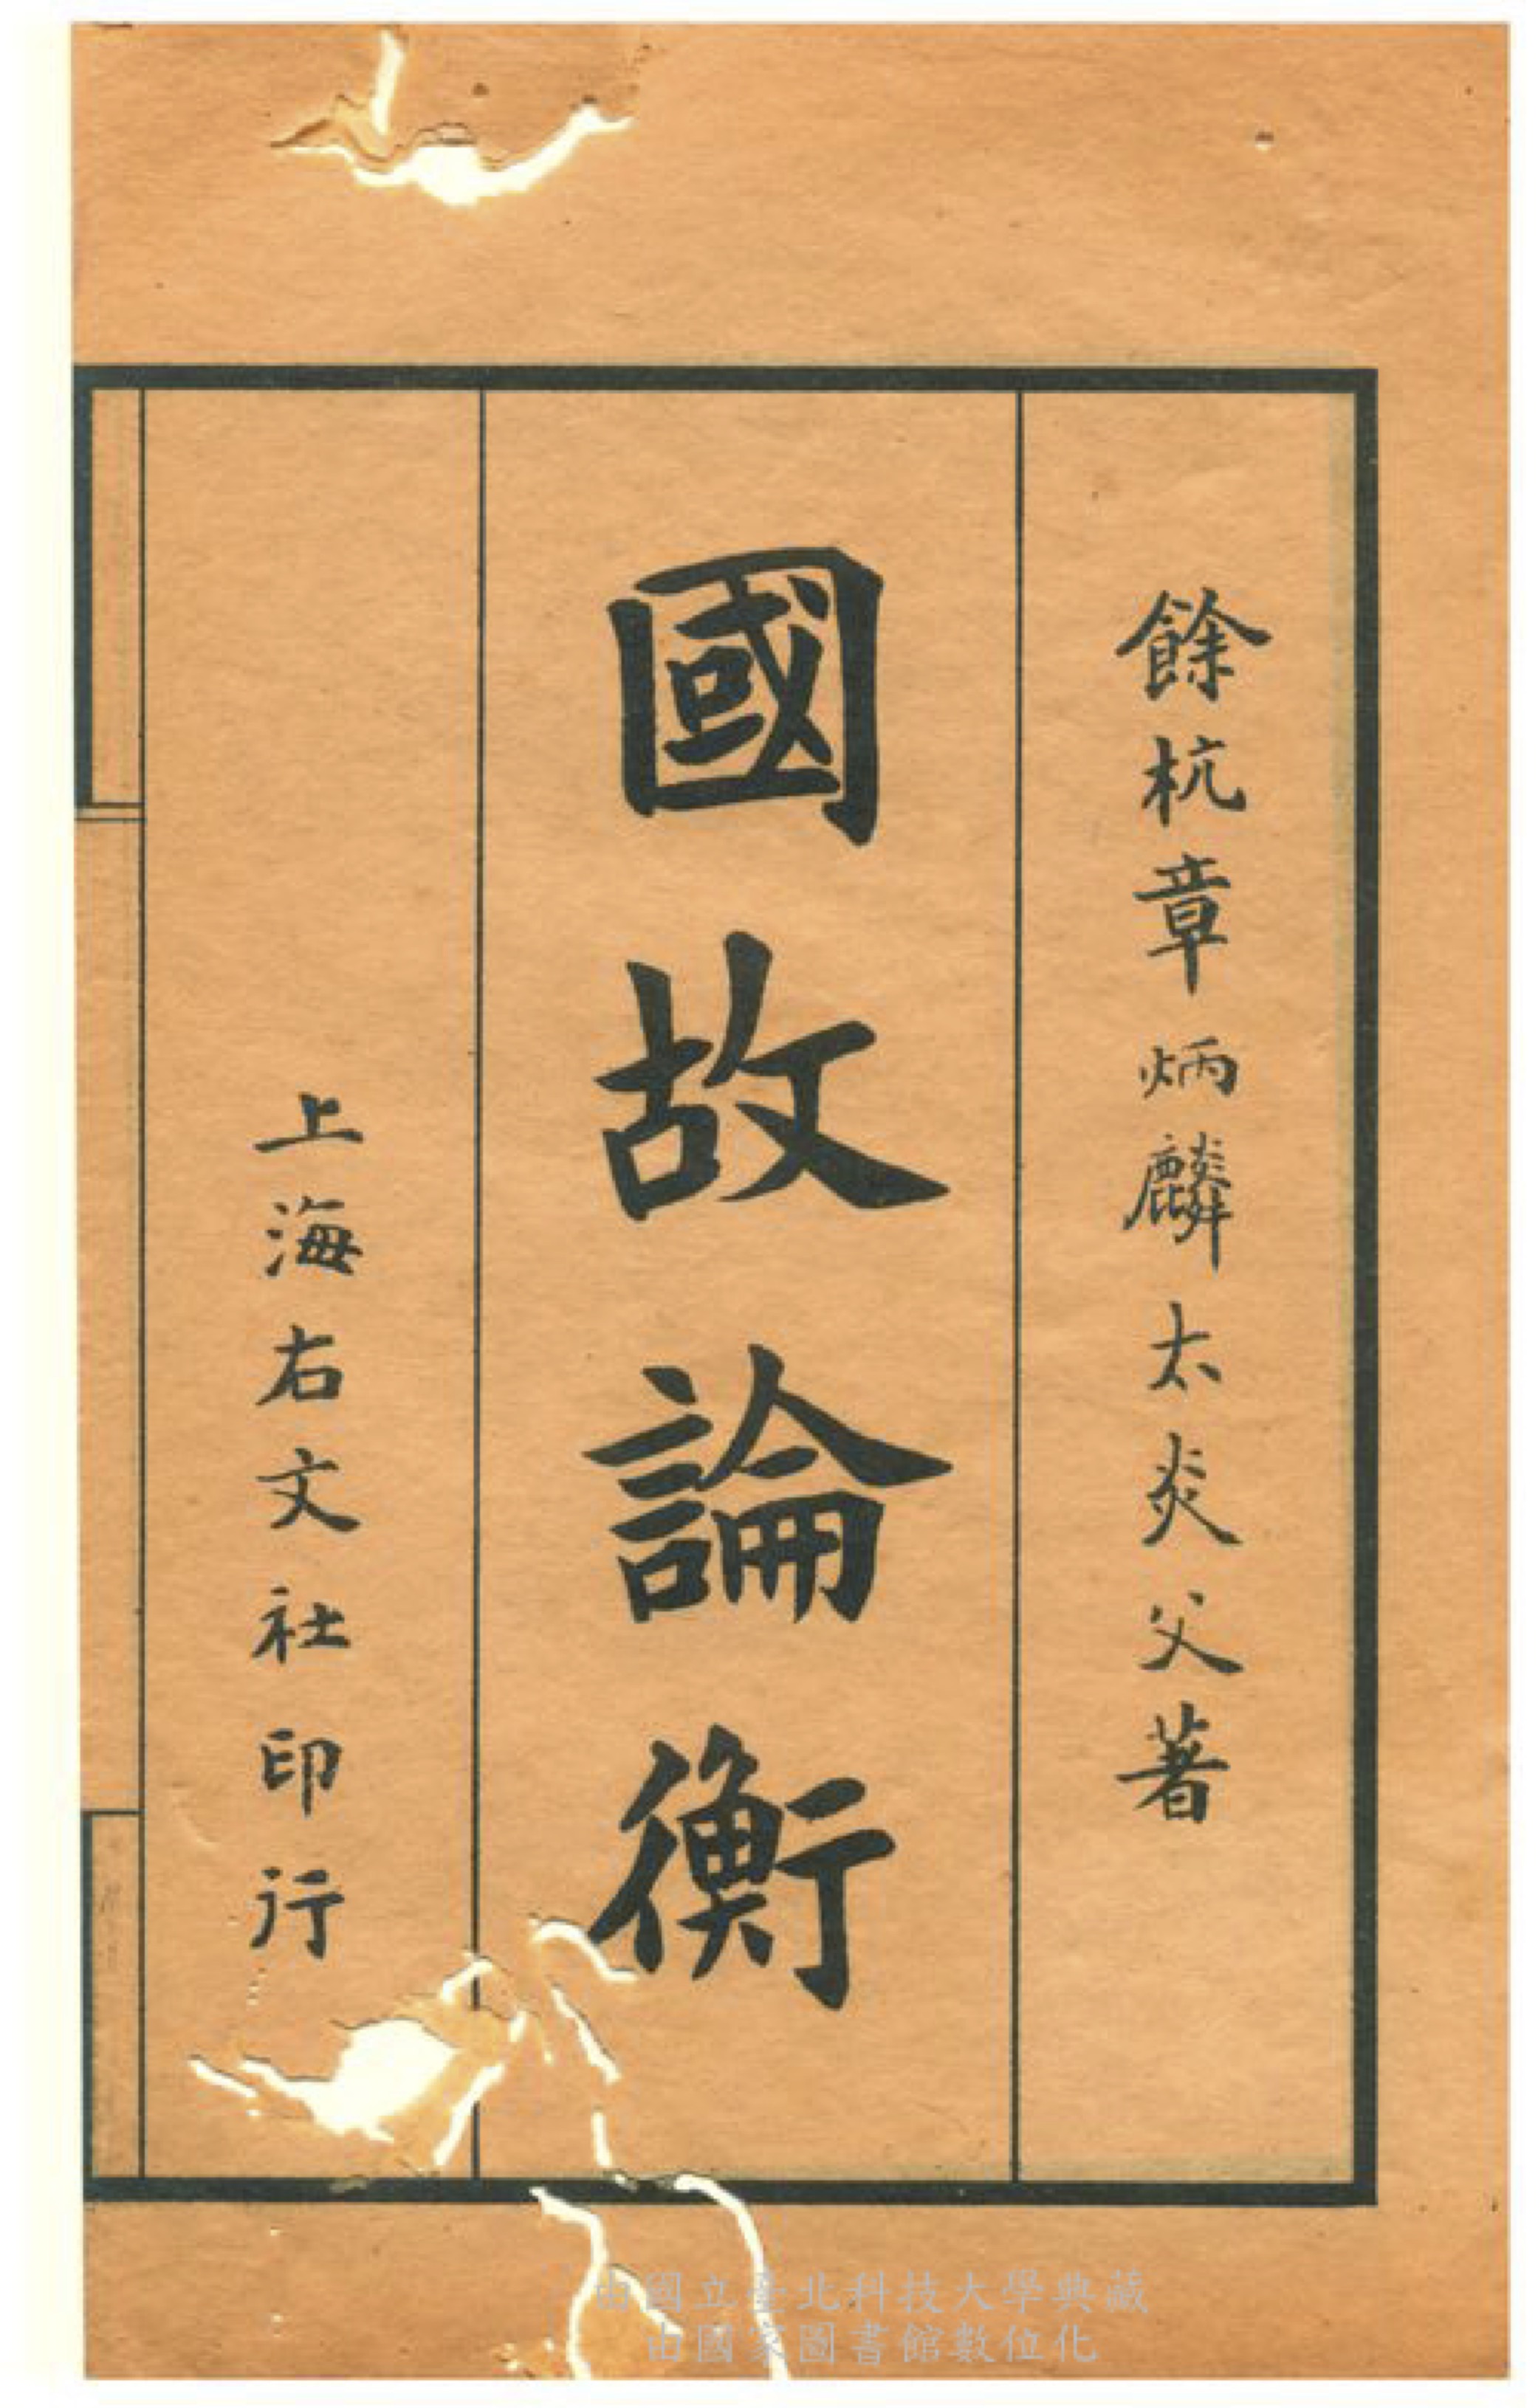 國故論衡的书籍封面